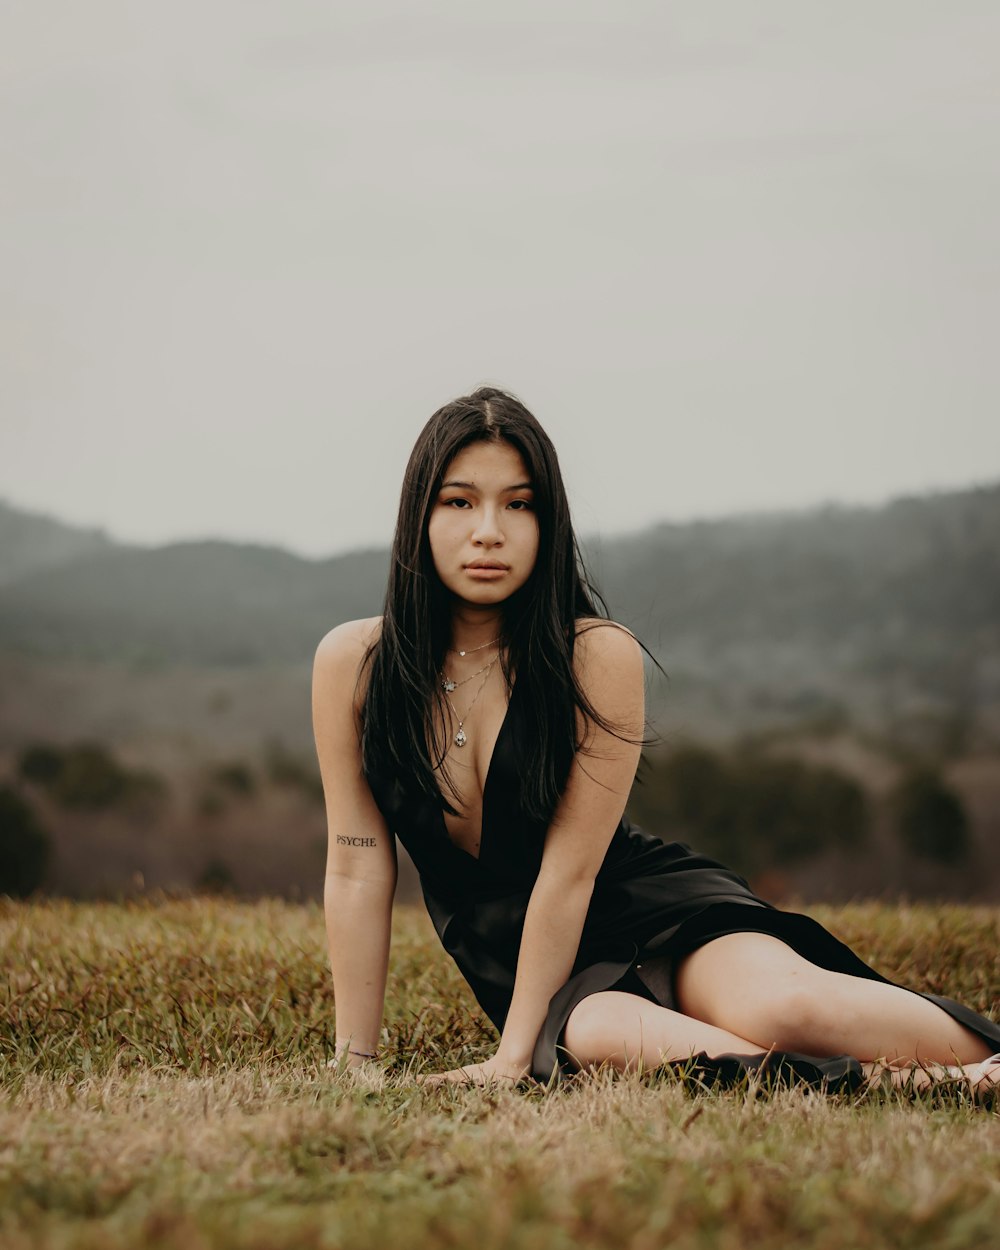 a woman in a black dress sitting in a field